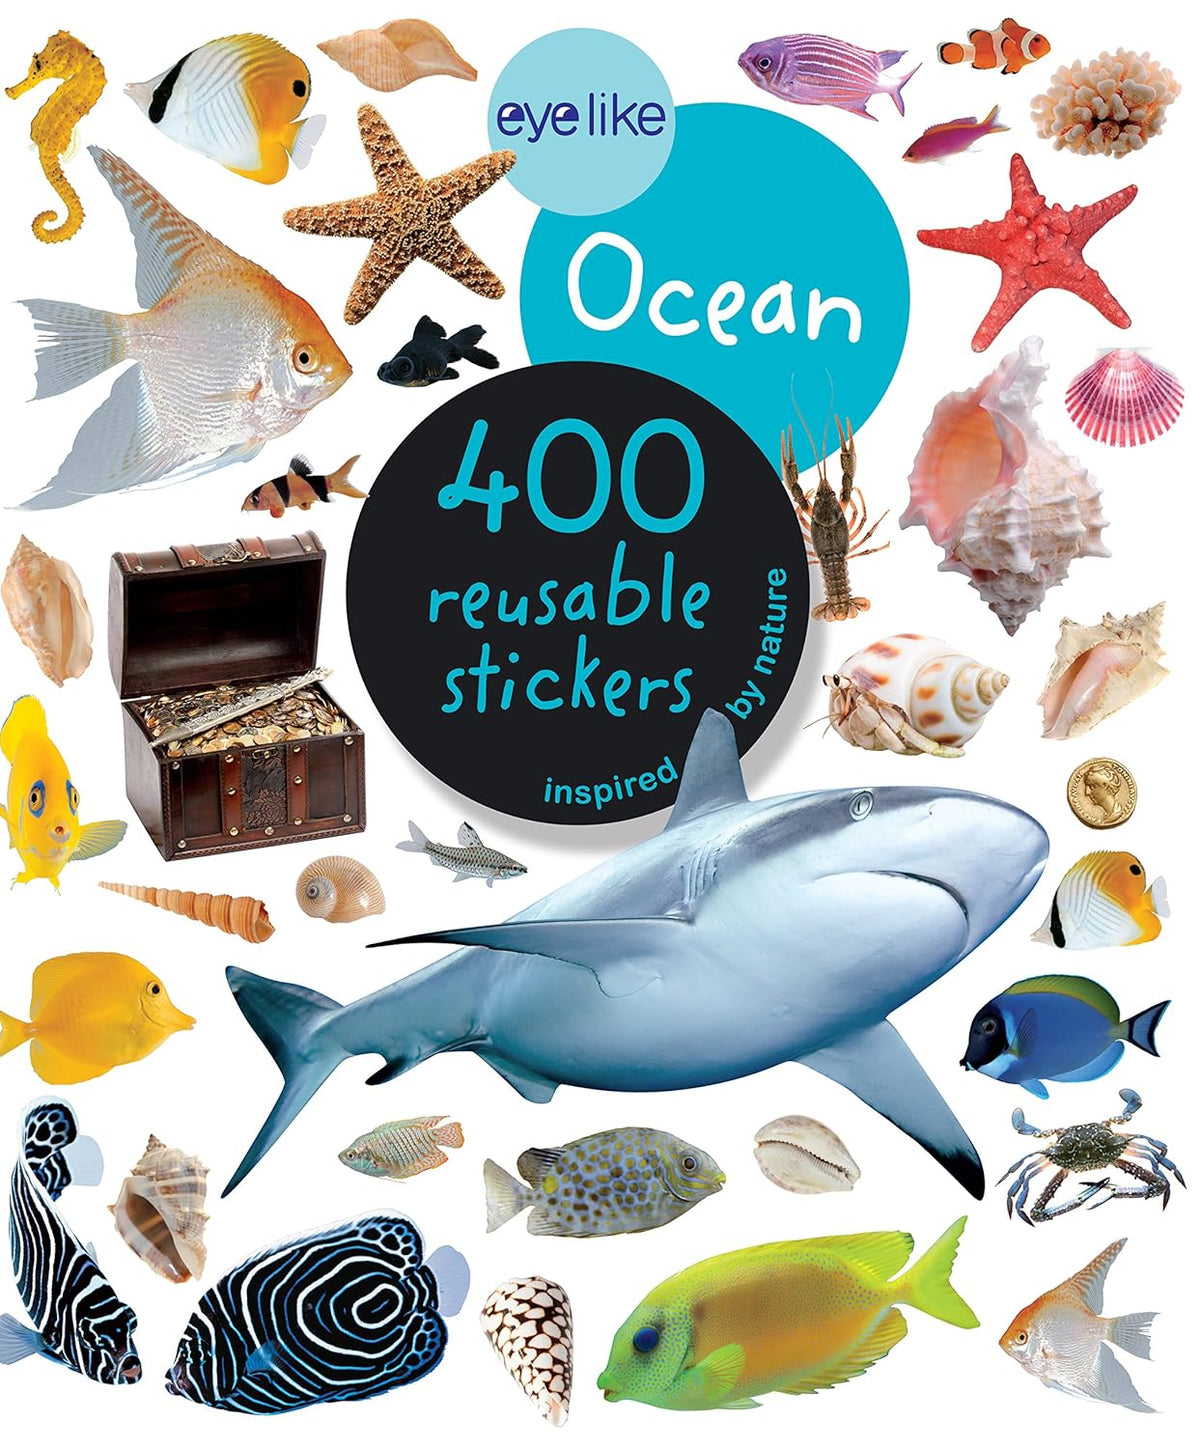 Eyelike Ocean 400 Reusable Stickers